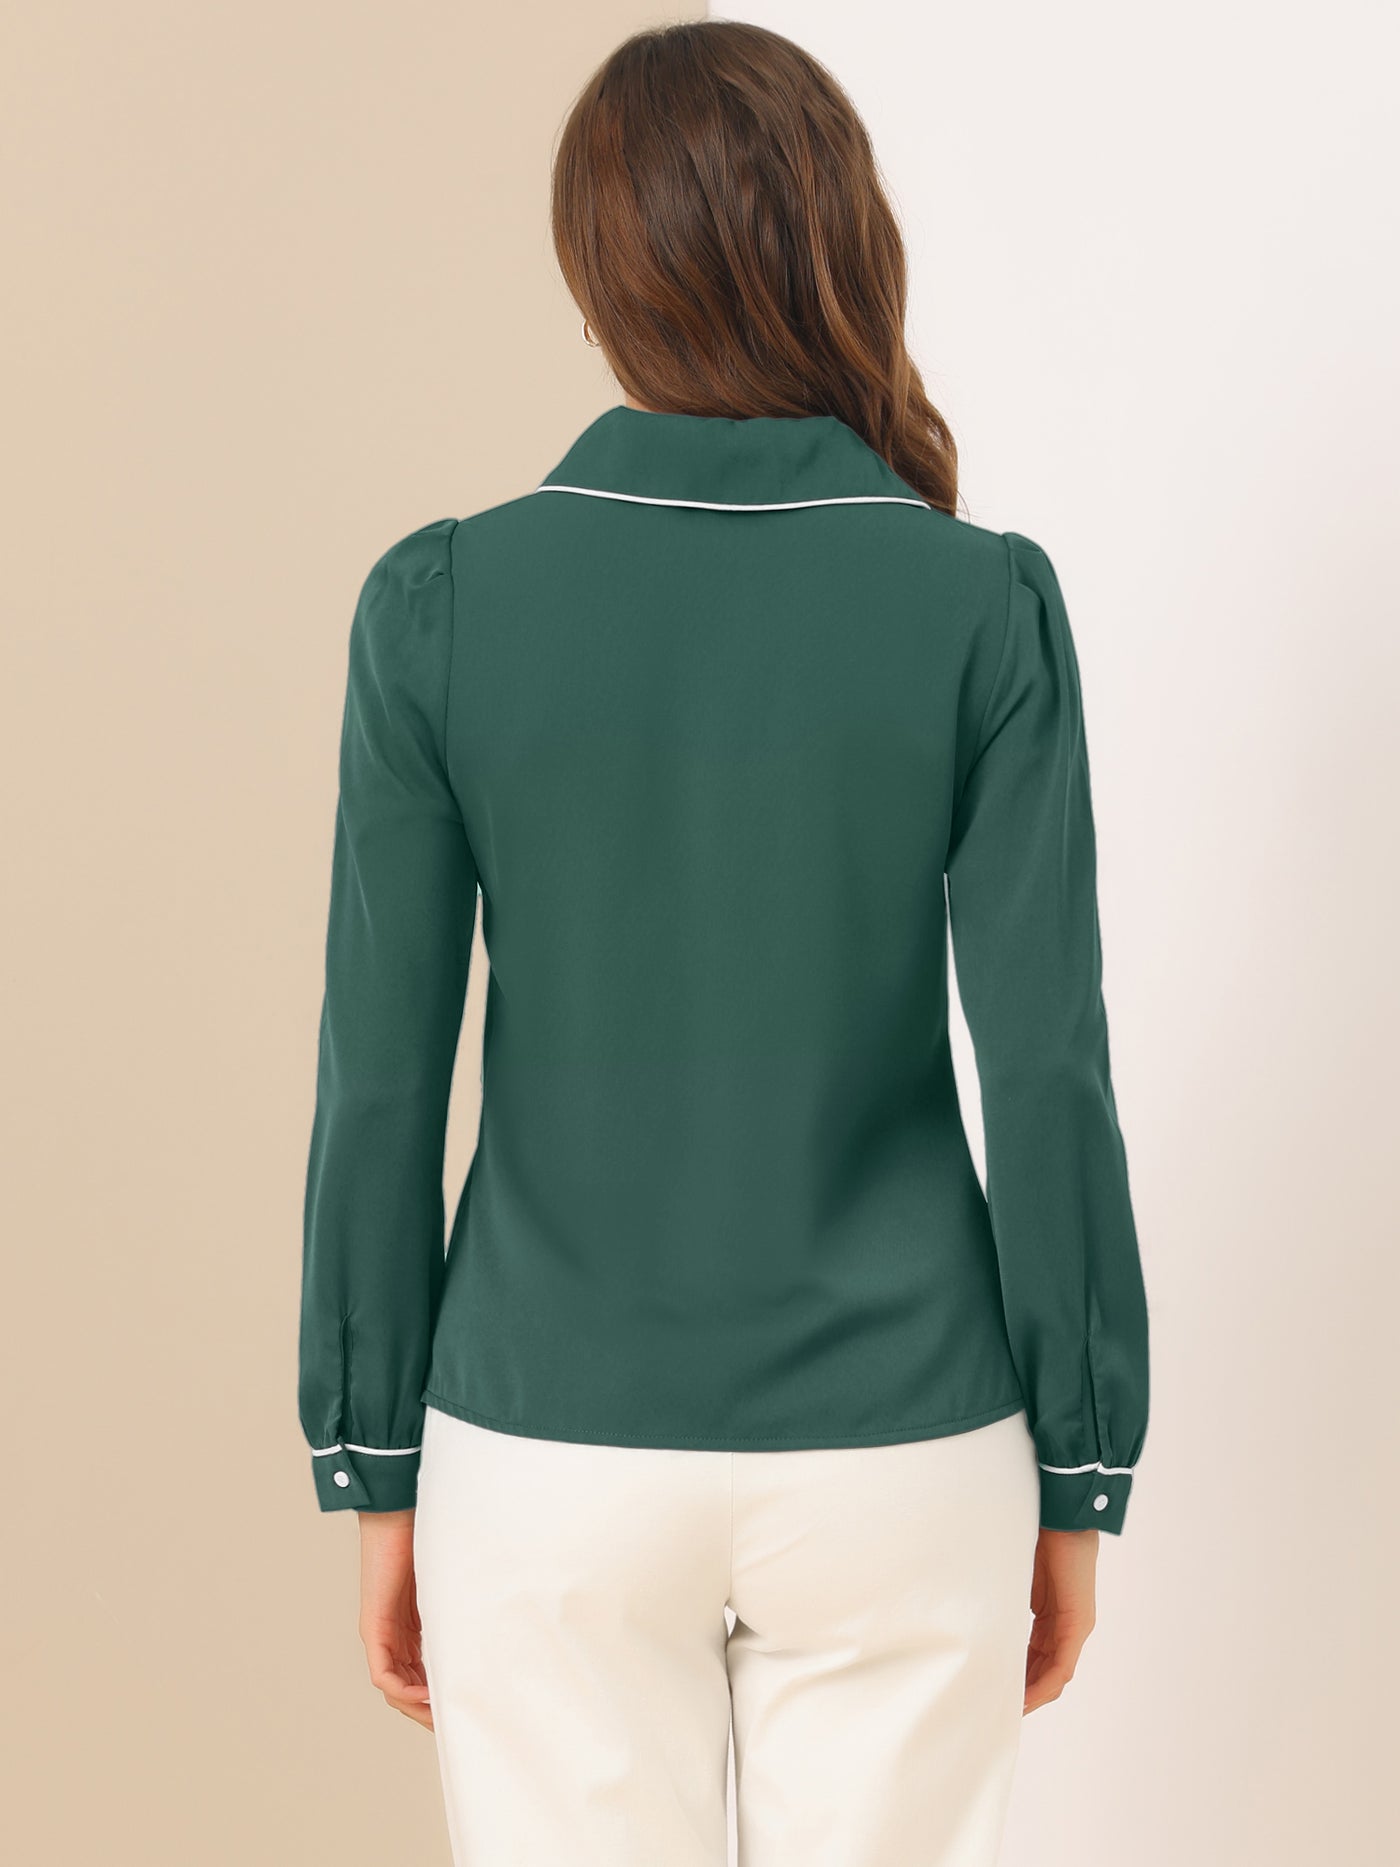 Allegra K Peter Pan Collar Long Sleeve Elegant Button Down Work Shirt